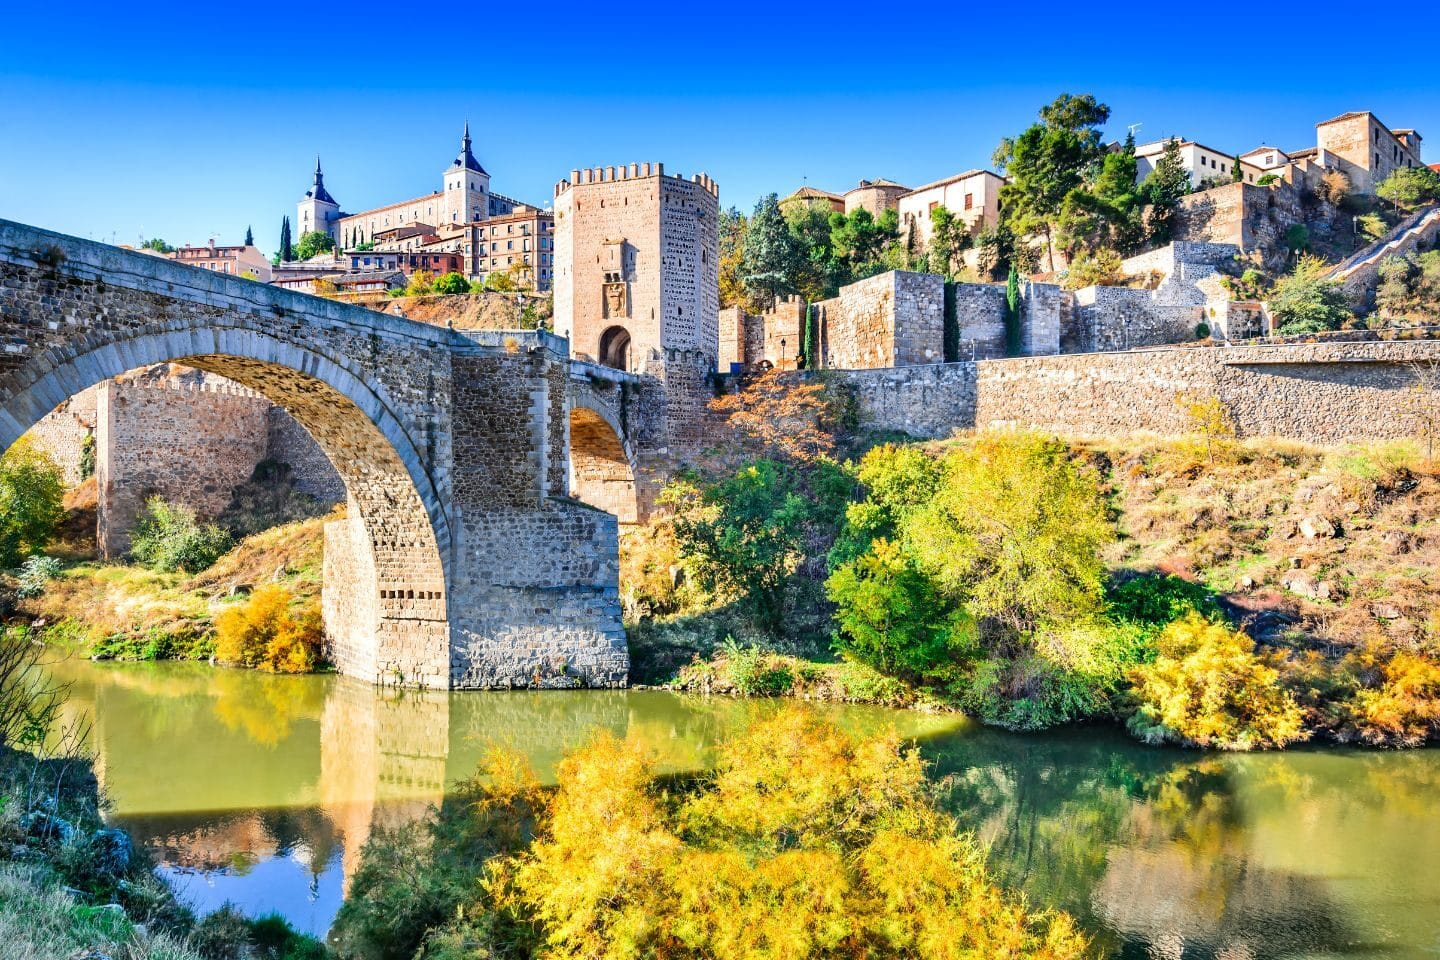 A castle in Toledo, Spain